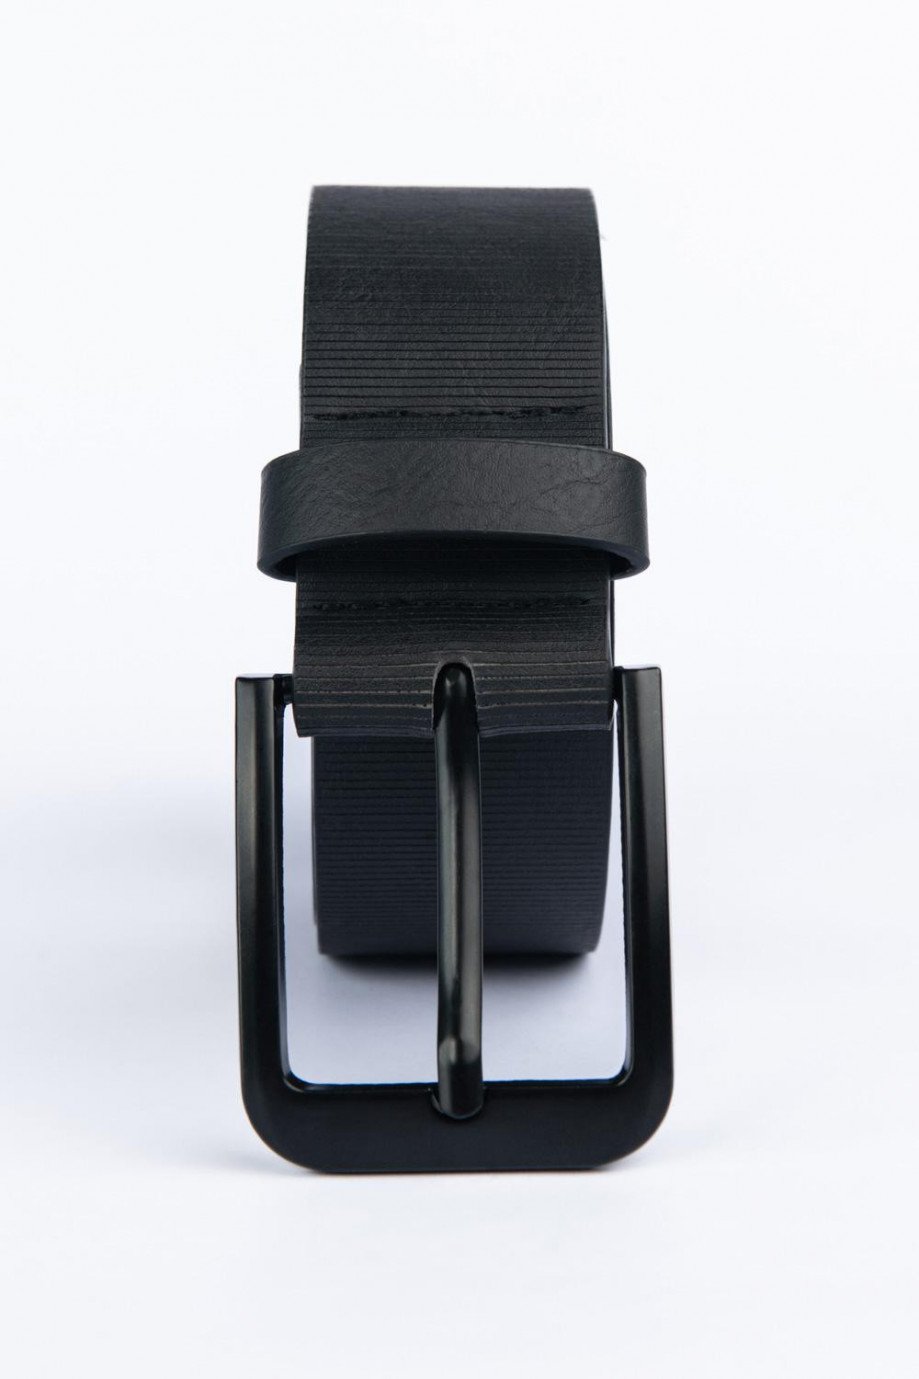 Cinturón sintético negro con hebilla metálica y texturas